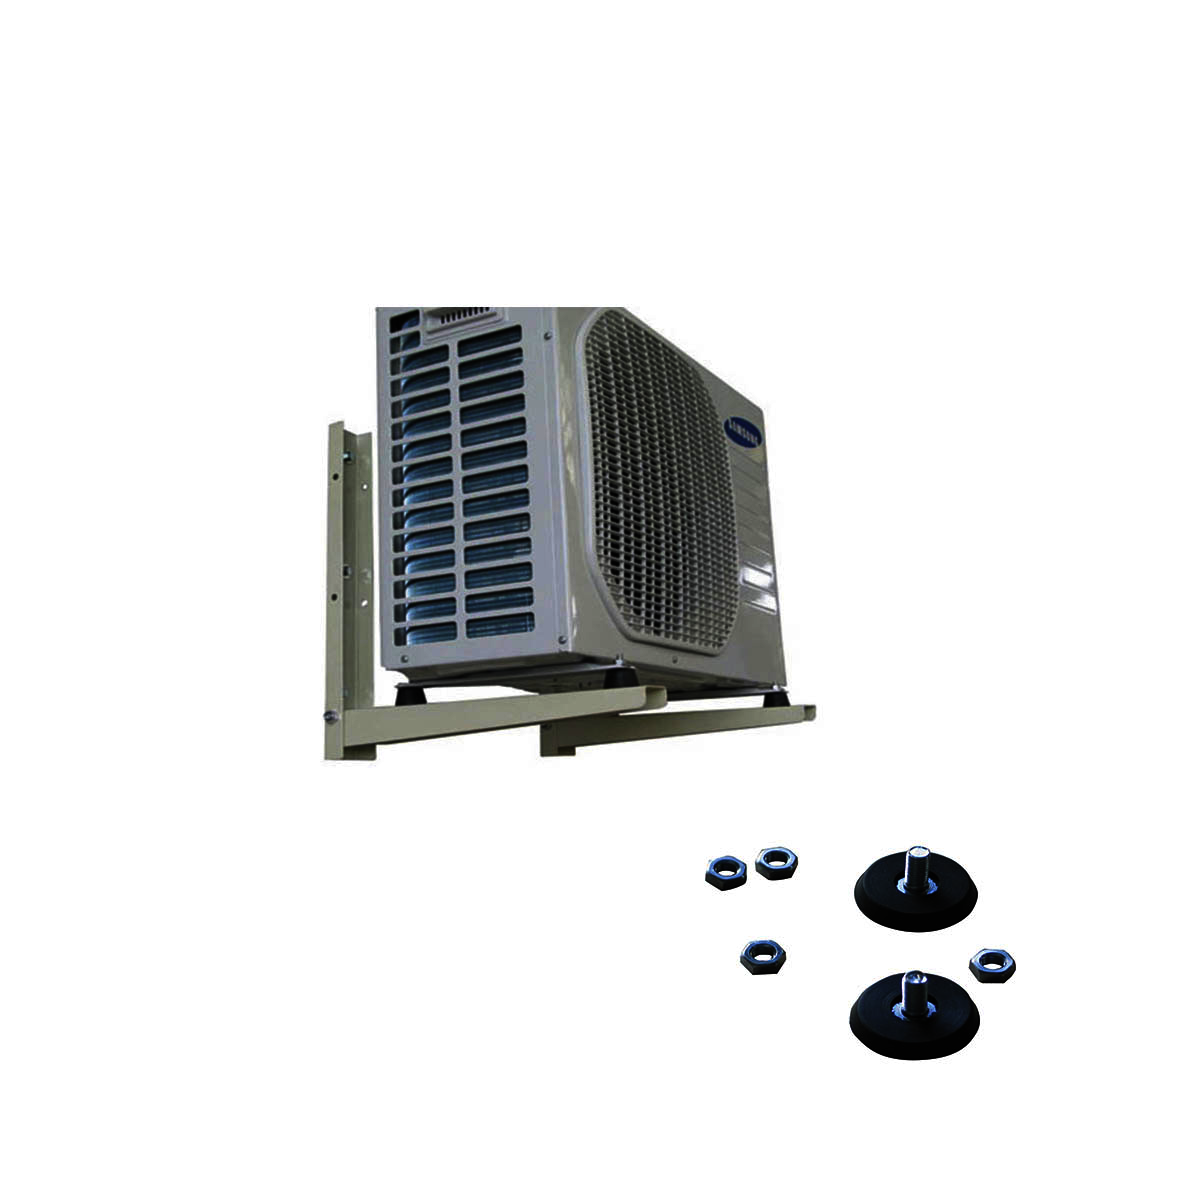 Hablar en voz alta evaporación Parcialmente Escuadra soporte de aire acondicionado desmontable de 500 x 450 mm  C143/CC450 (Juego de 2 unidades) | Seccion B | Raiz | Pecomark